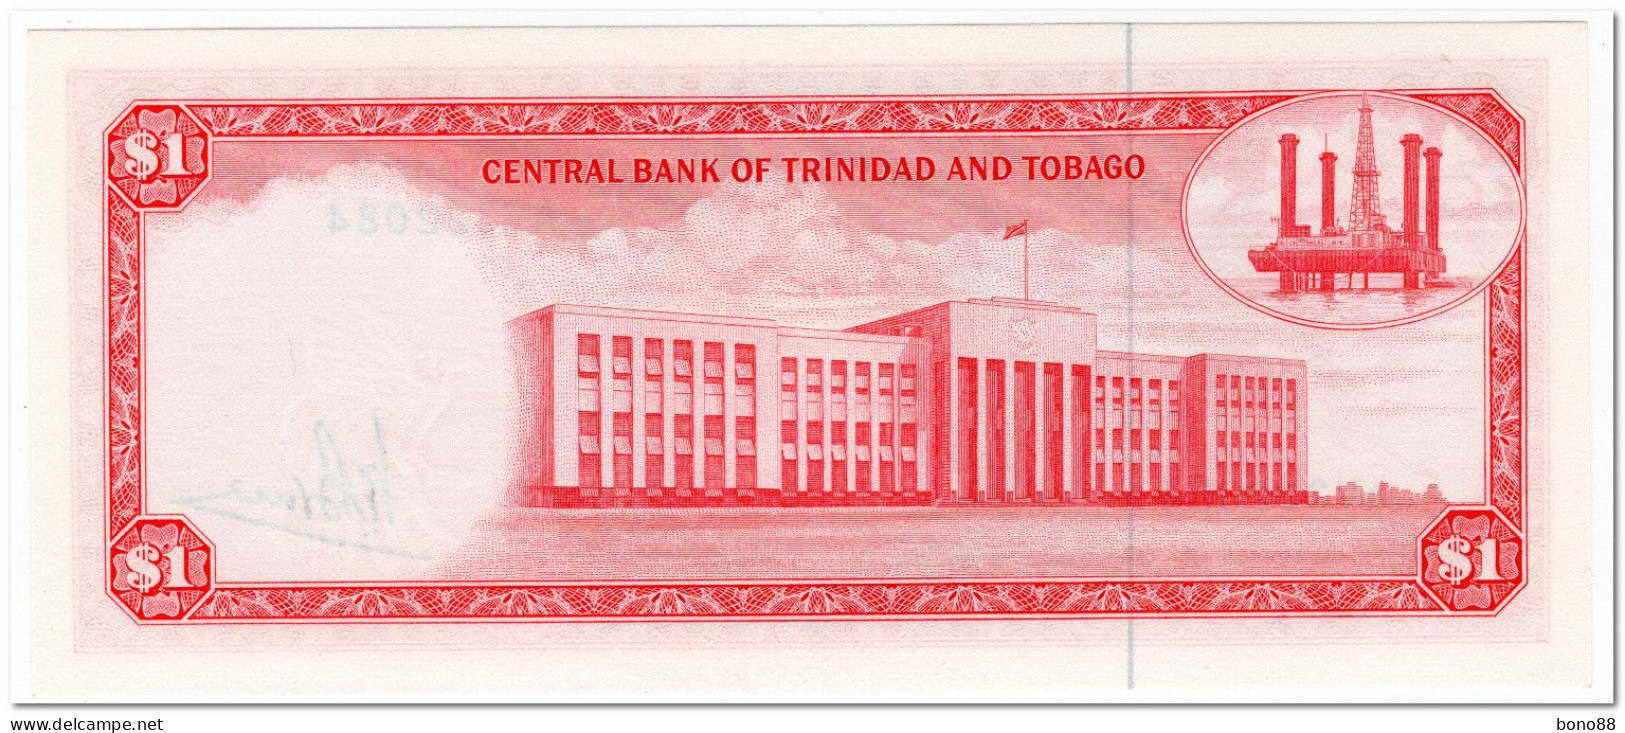 TRINIDAD & TOBAGO,1 DOLLAR,L.1964, (1977) P.30a,UNC - Trindad & Tobago